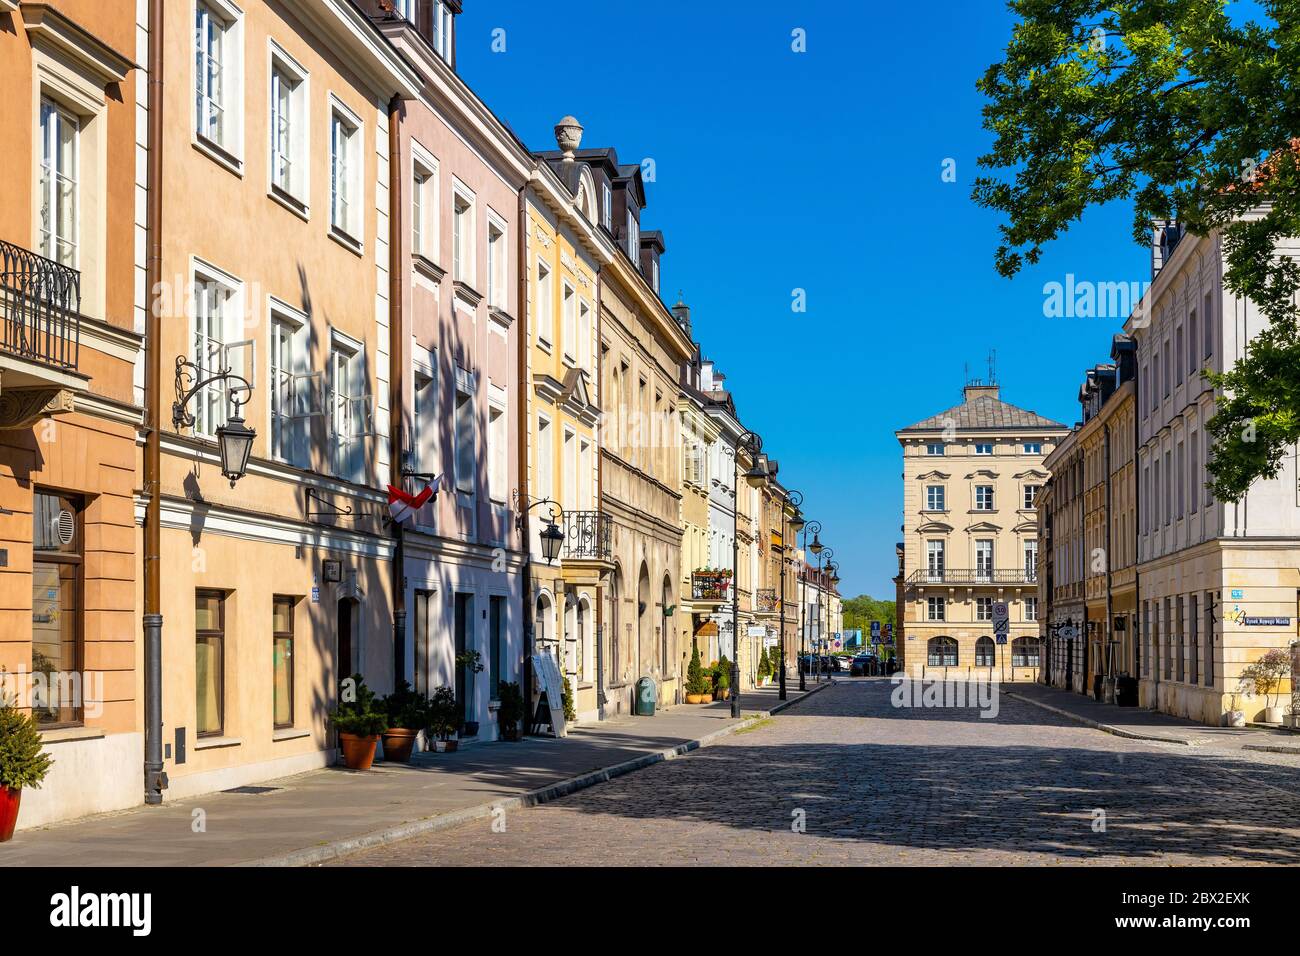 Warsaw, Mazovia / Poland - 2020/05/10: Colorful renovated tenement houses of historic New Town quarter - Nowe Miasto - along Freta street Stock Photo